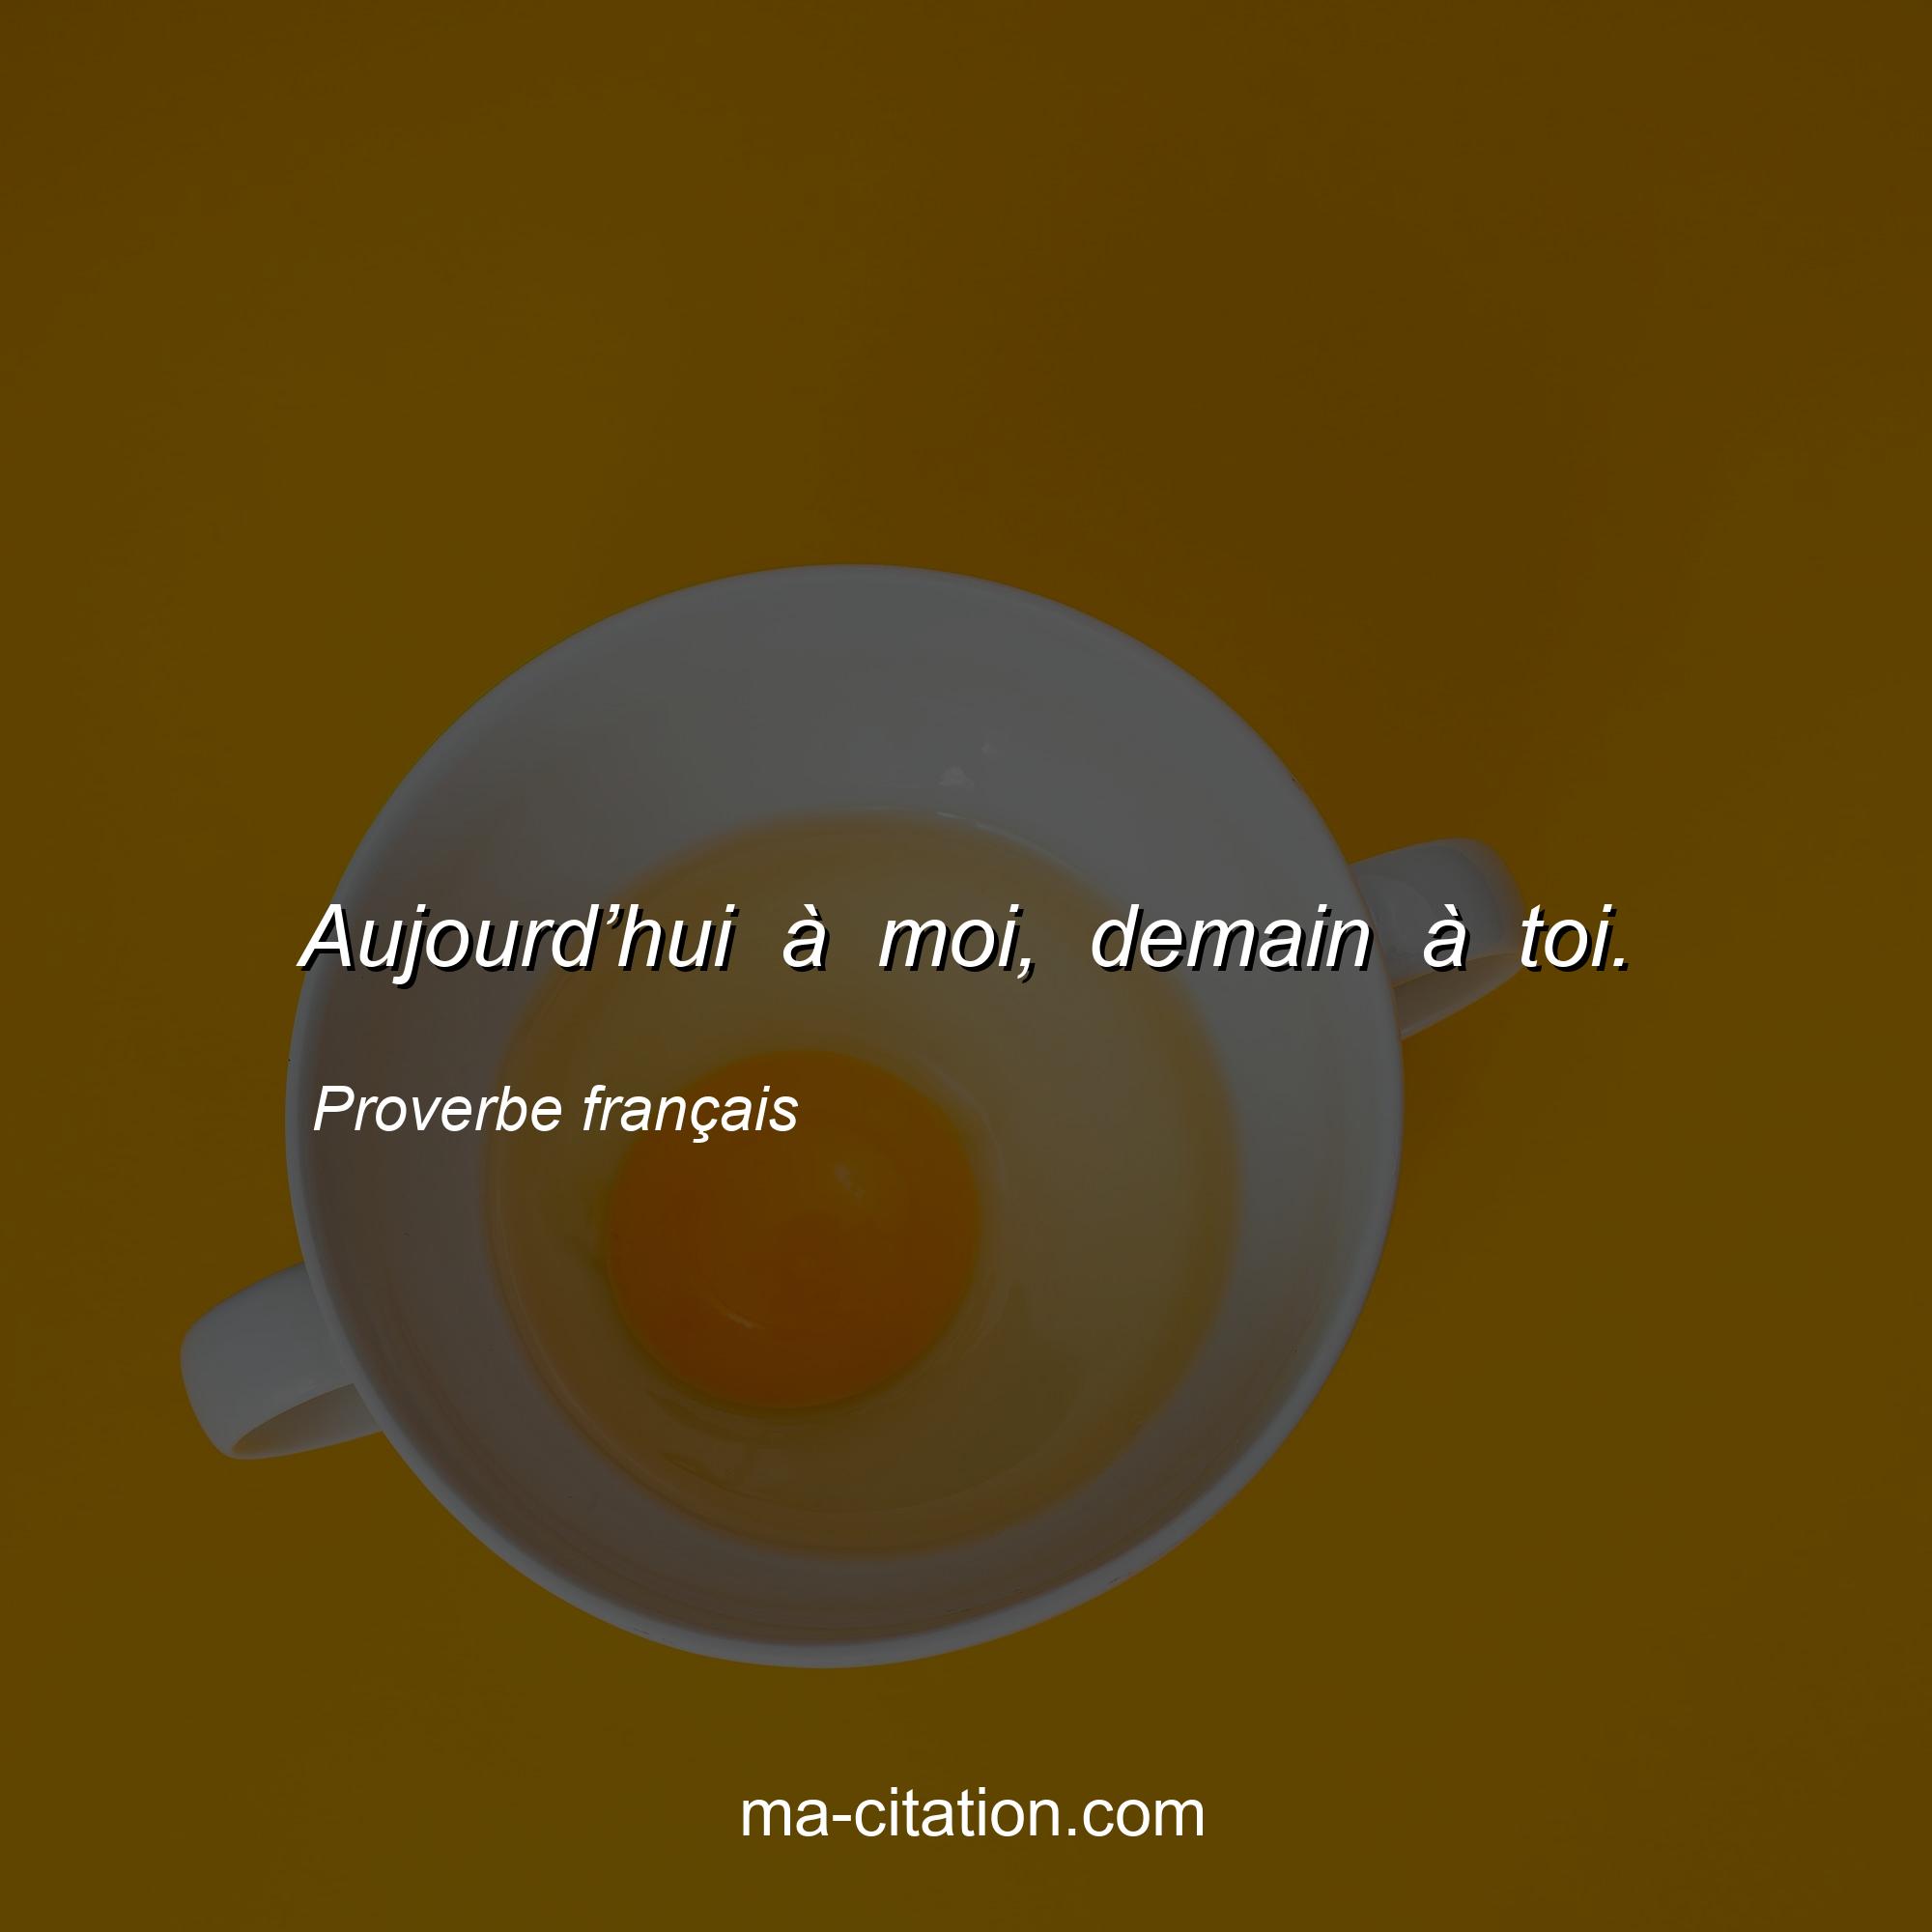 Proverbe français : Aujourd’hui à moi, demain à toi.